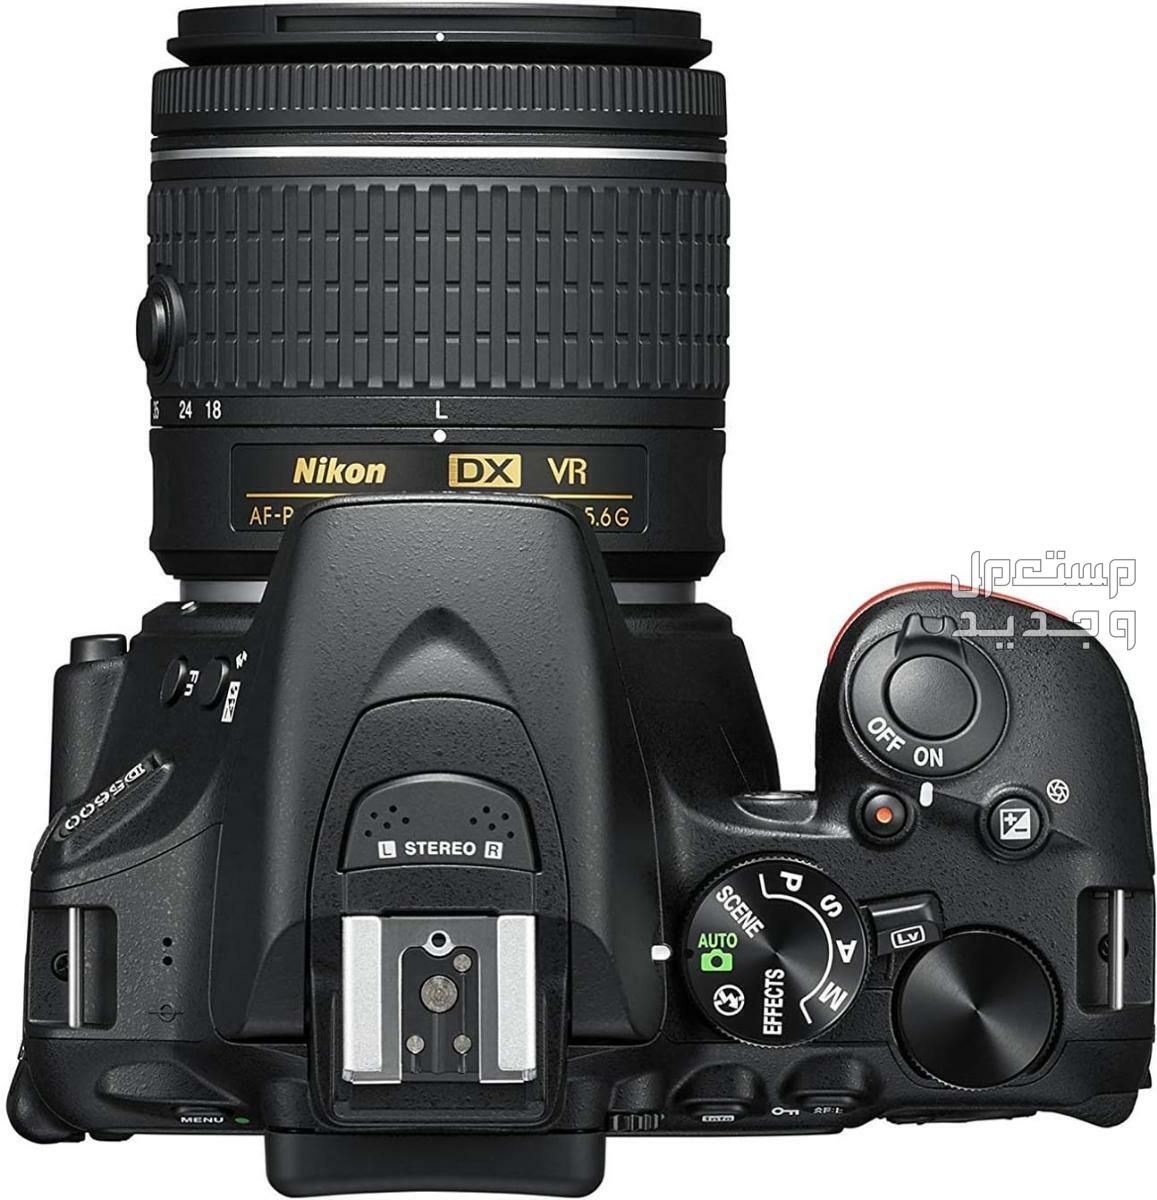 10 كاميرات تصوير ماركات عالمية بأسعار رخيصة في قطر مميزات كاميرا Nikon D5600